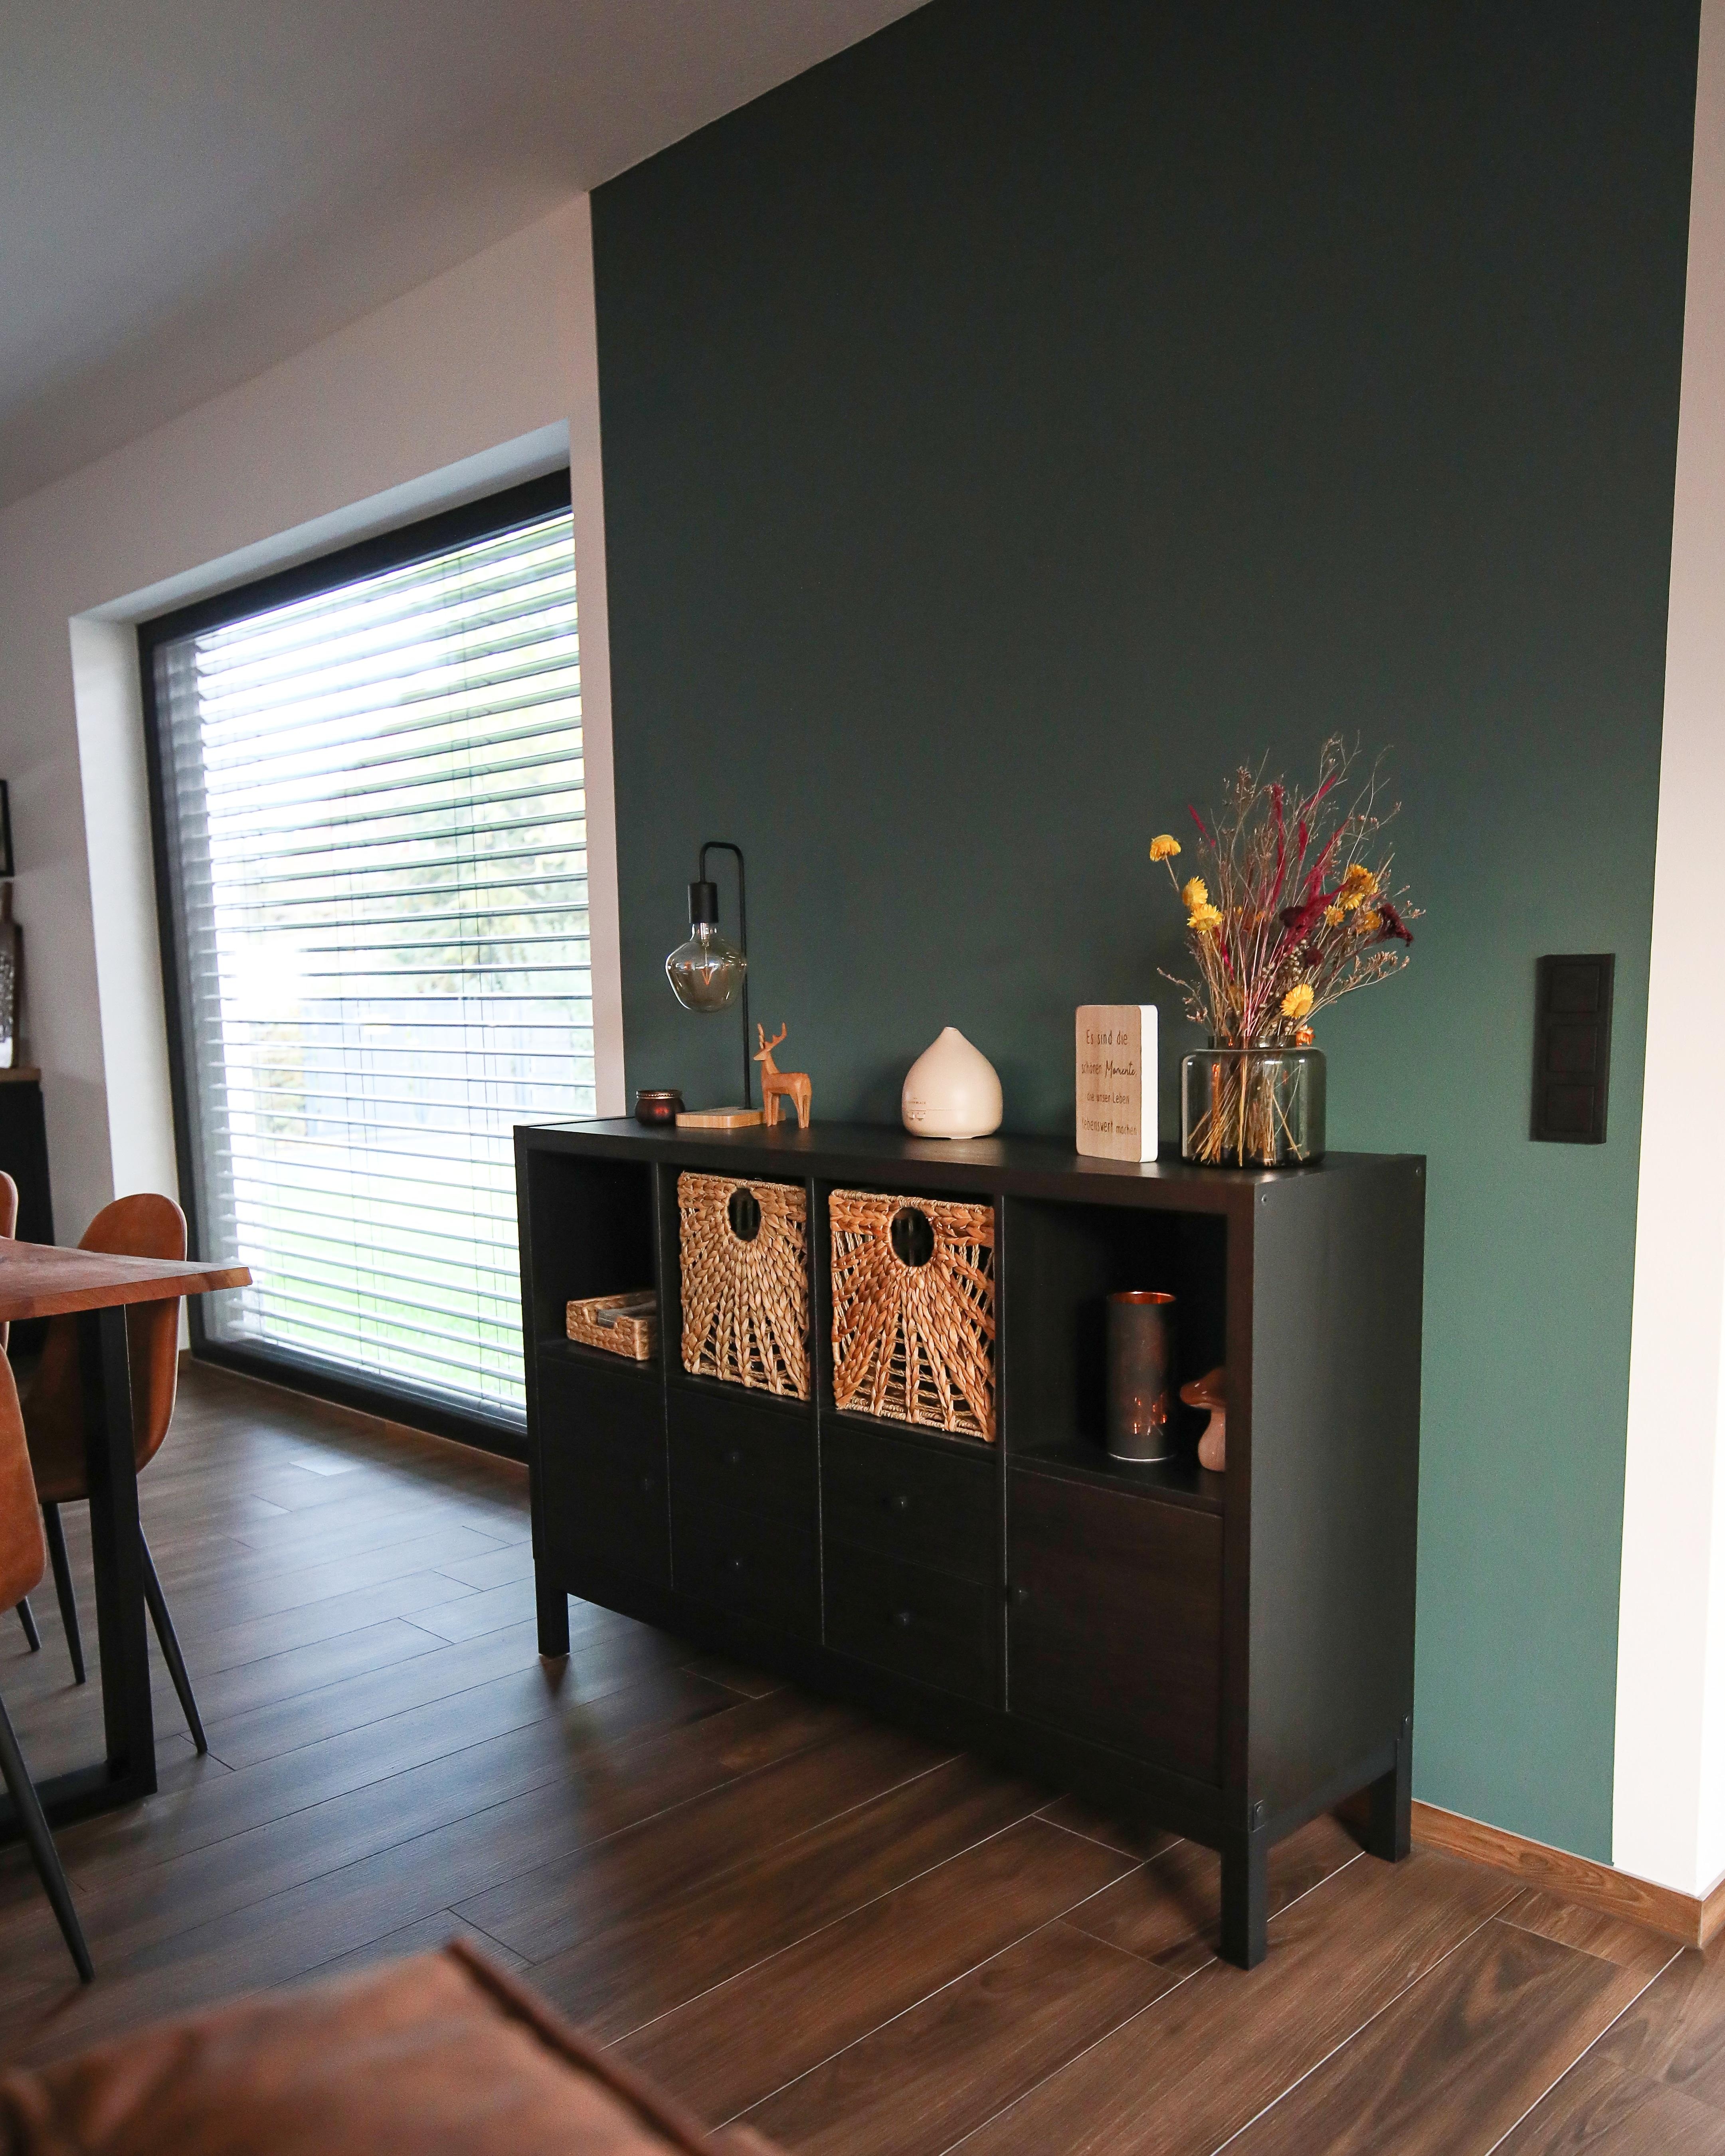 Ein bisschen Farbe im Wohnzimmer 🥰 #wohnzimmer #wohnbereich #grünewand #wandfarbe #alpina #helddeswaldes